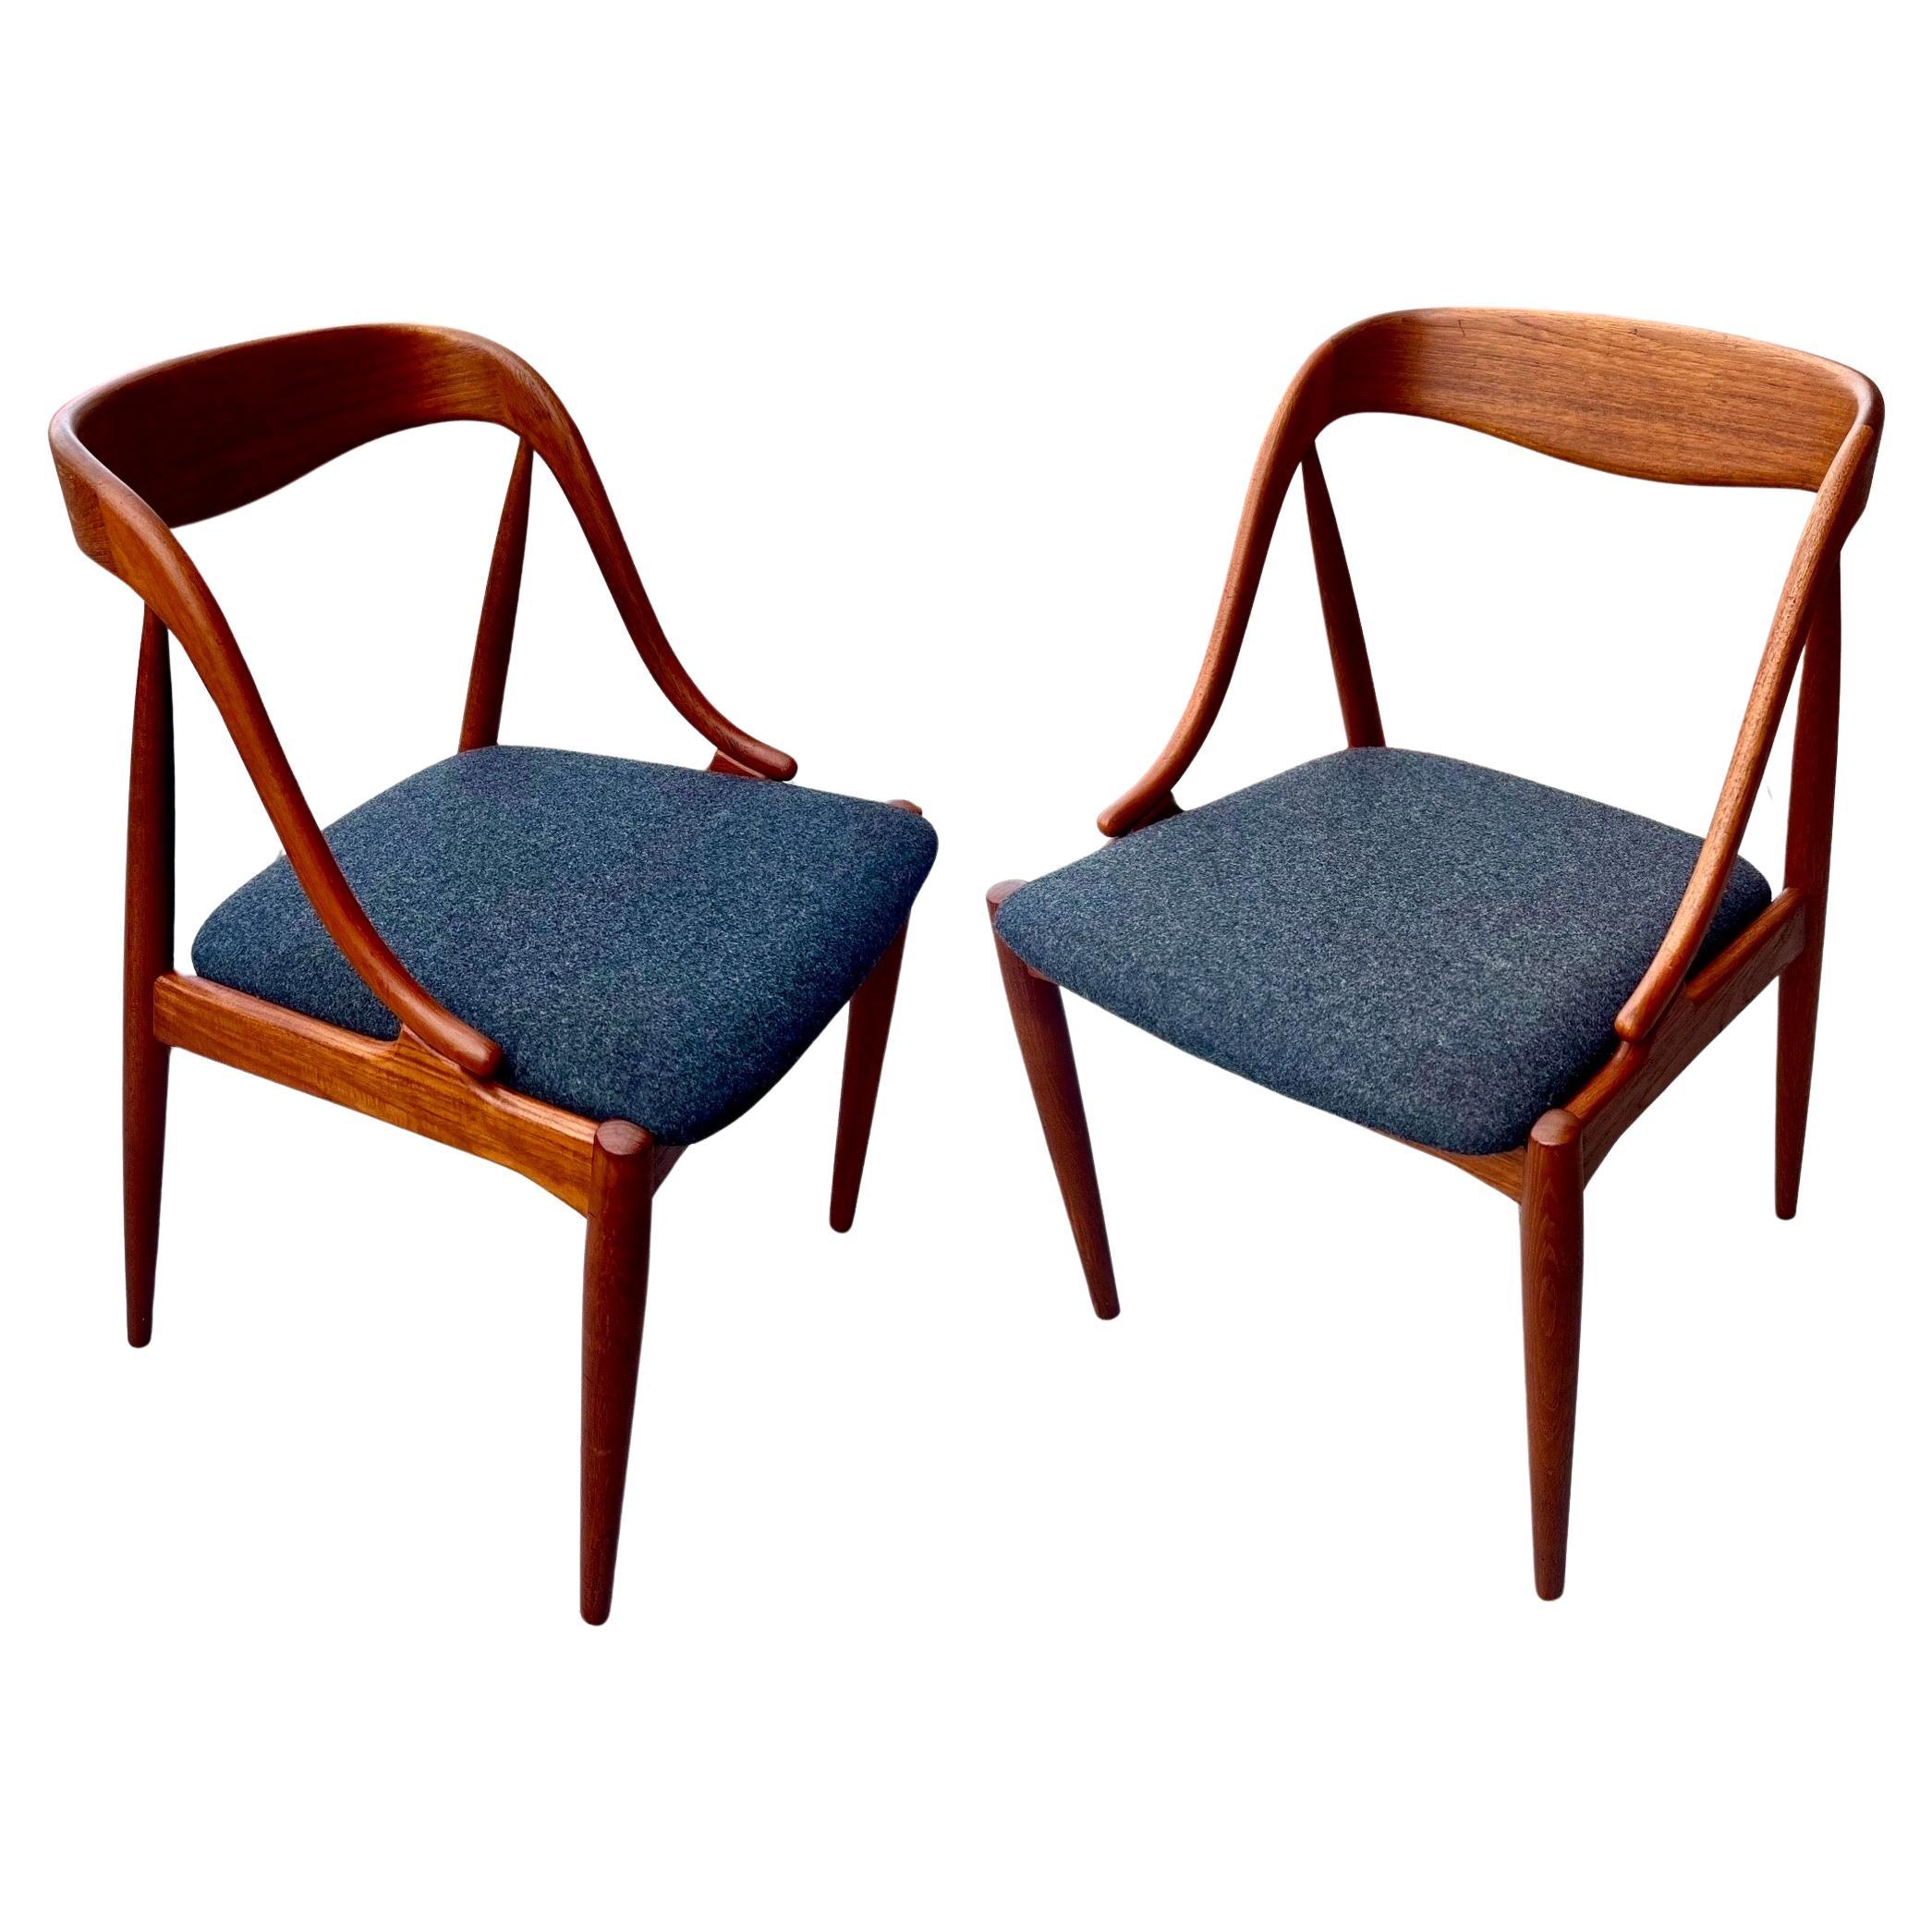 Pair of Danish Modern teak Model 16 Chairs by Johannes Andersen for Uldum Mobler